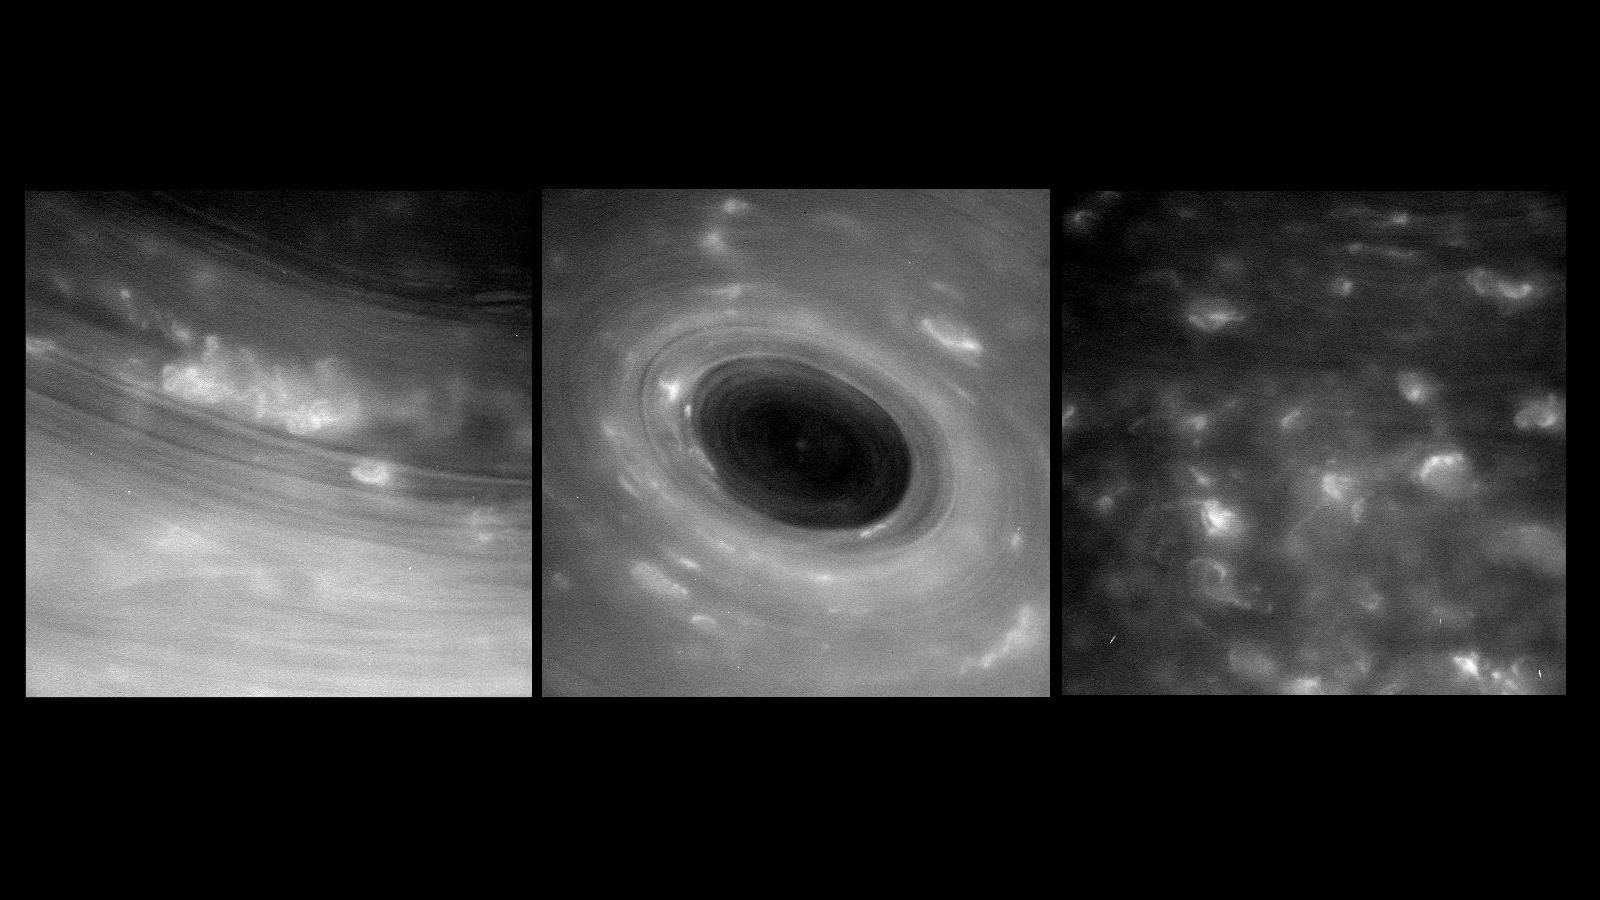 La sonde Cassini a survécu à son premier passage entre Saturne et ses anneaux